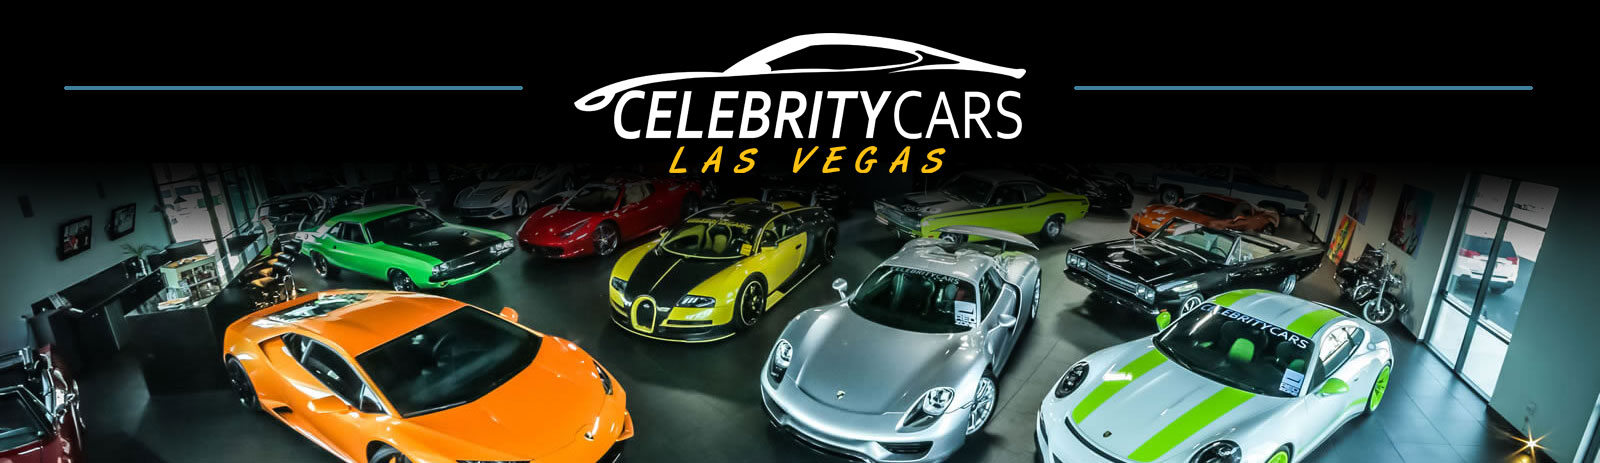 Celebrity Cars Las Vegas